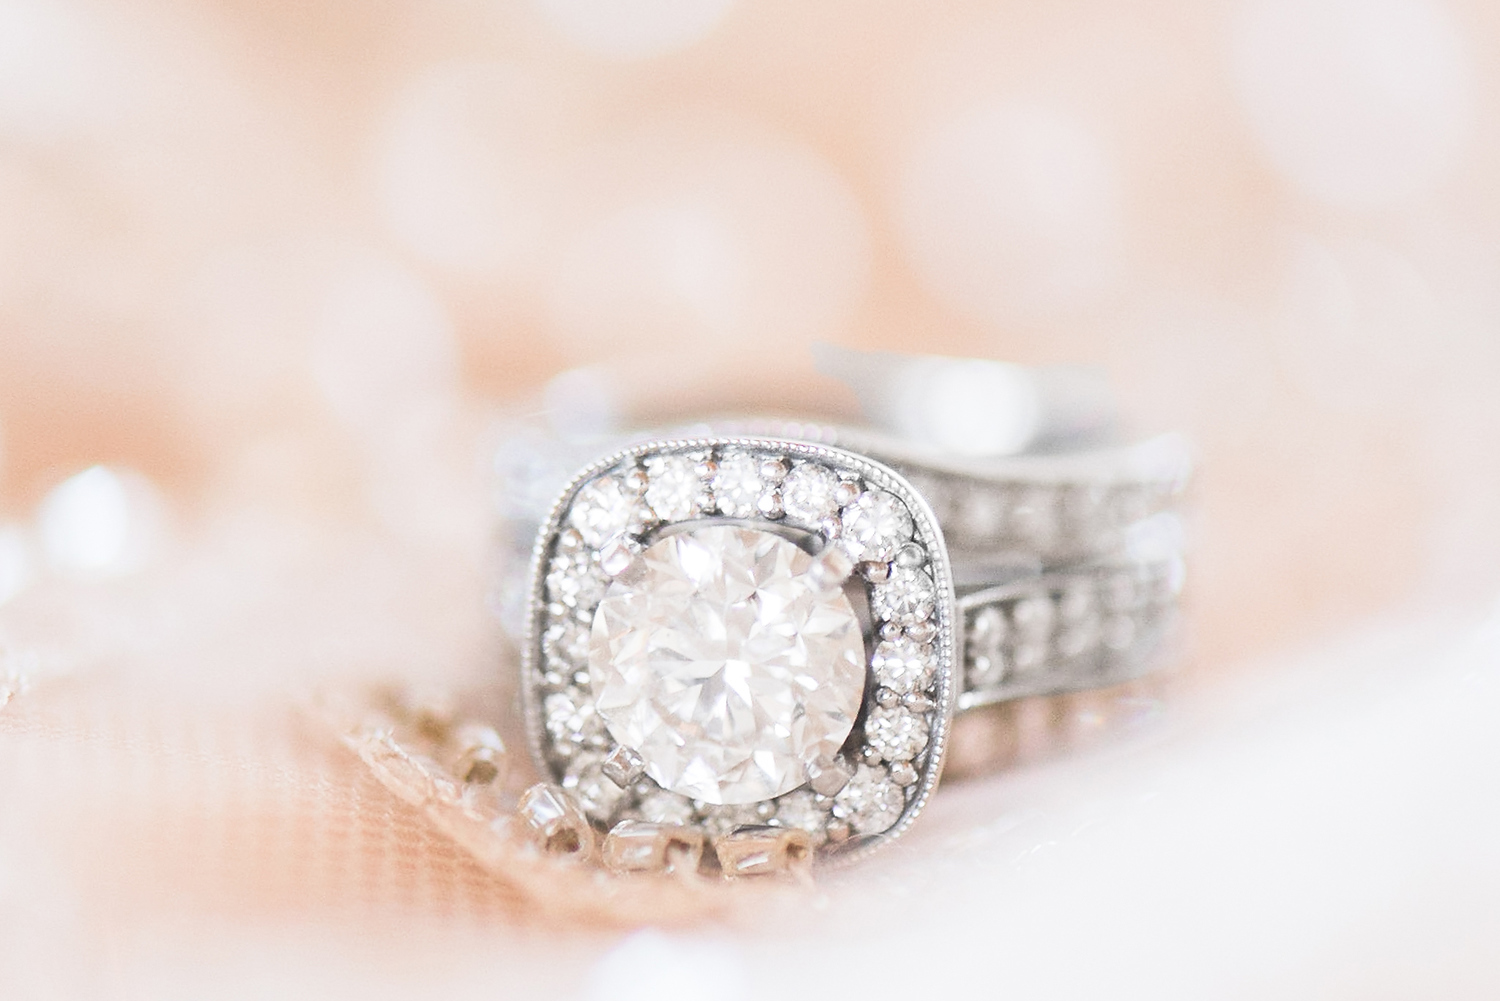 Wedding ring detail image